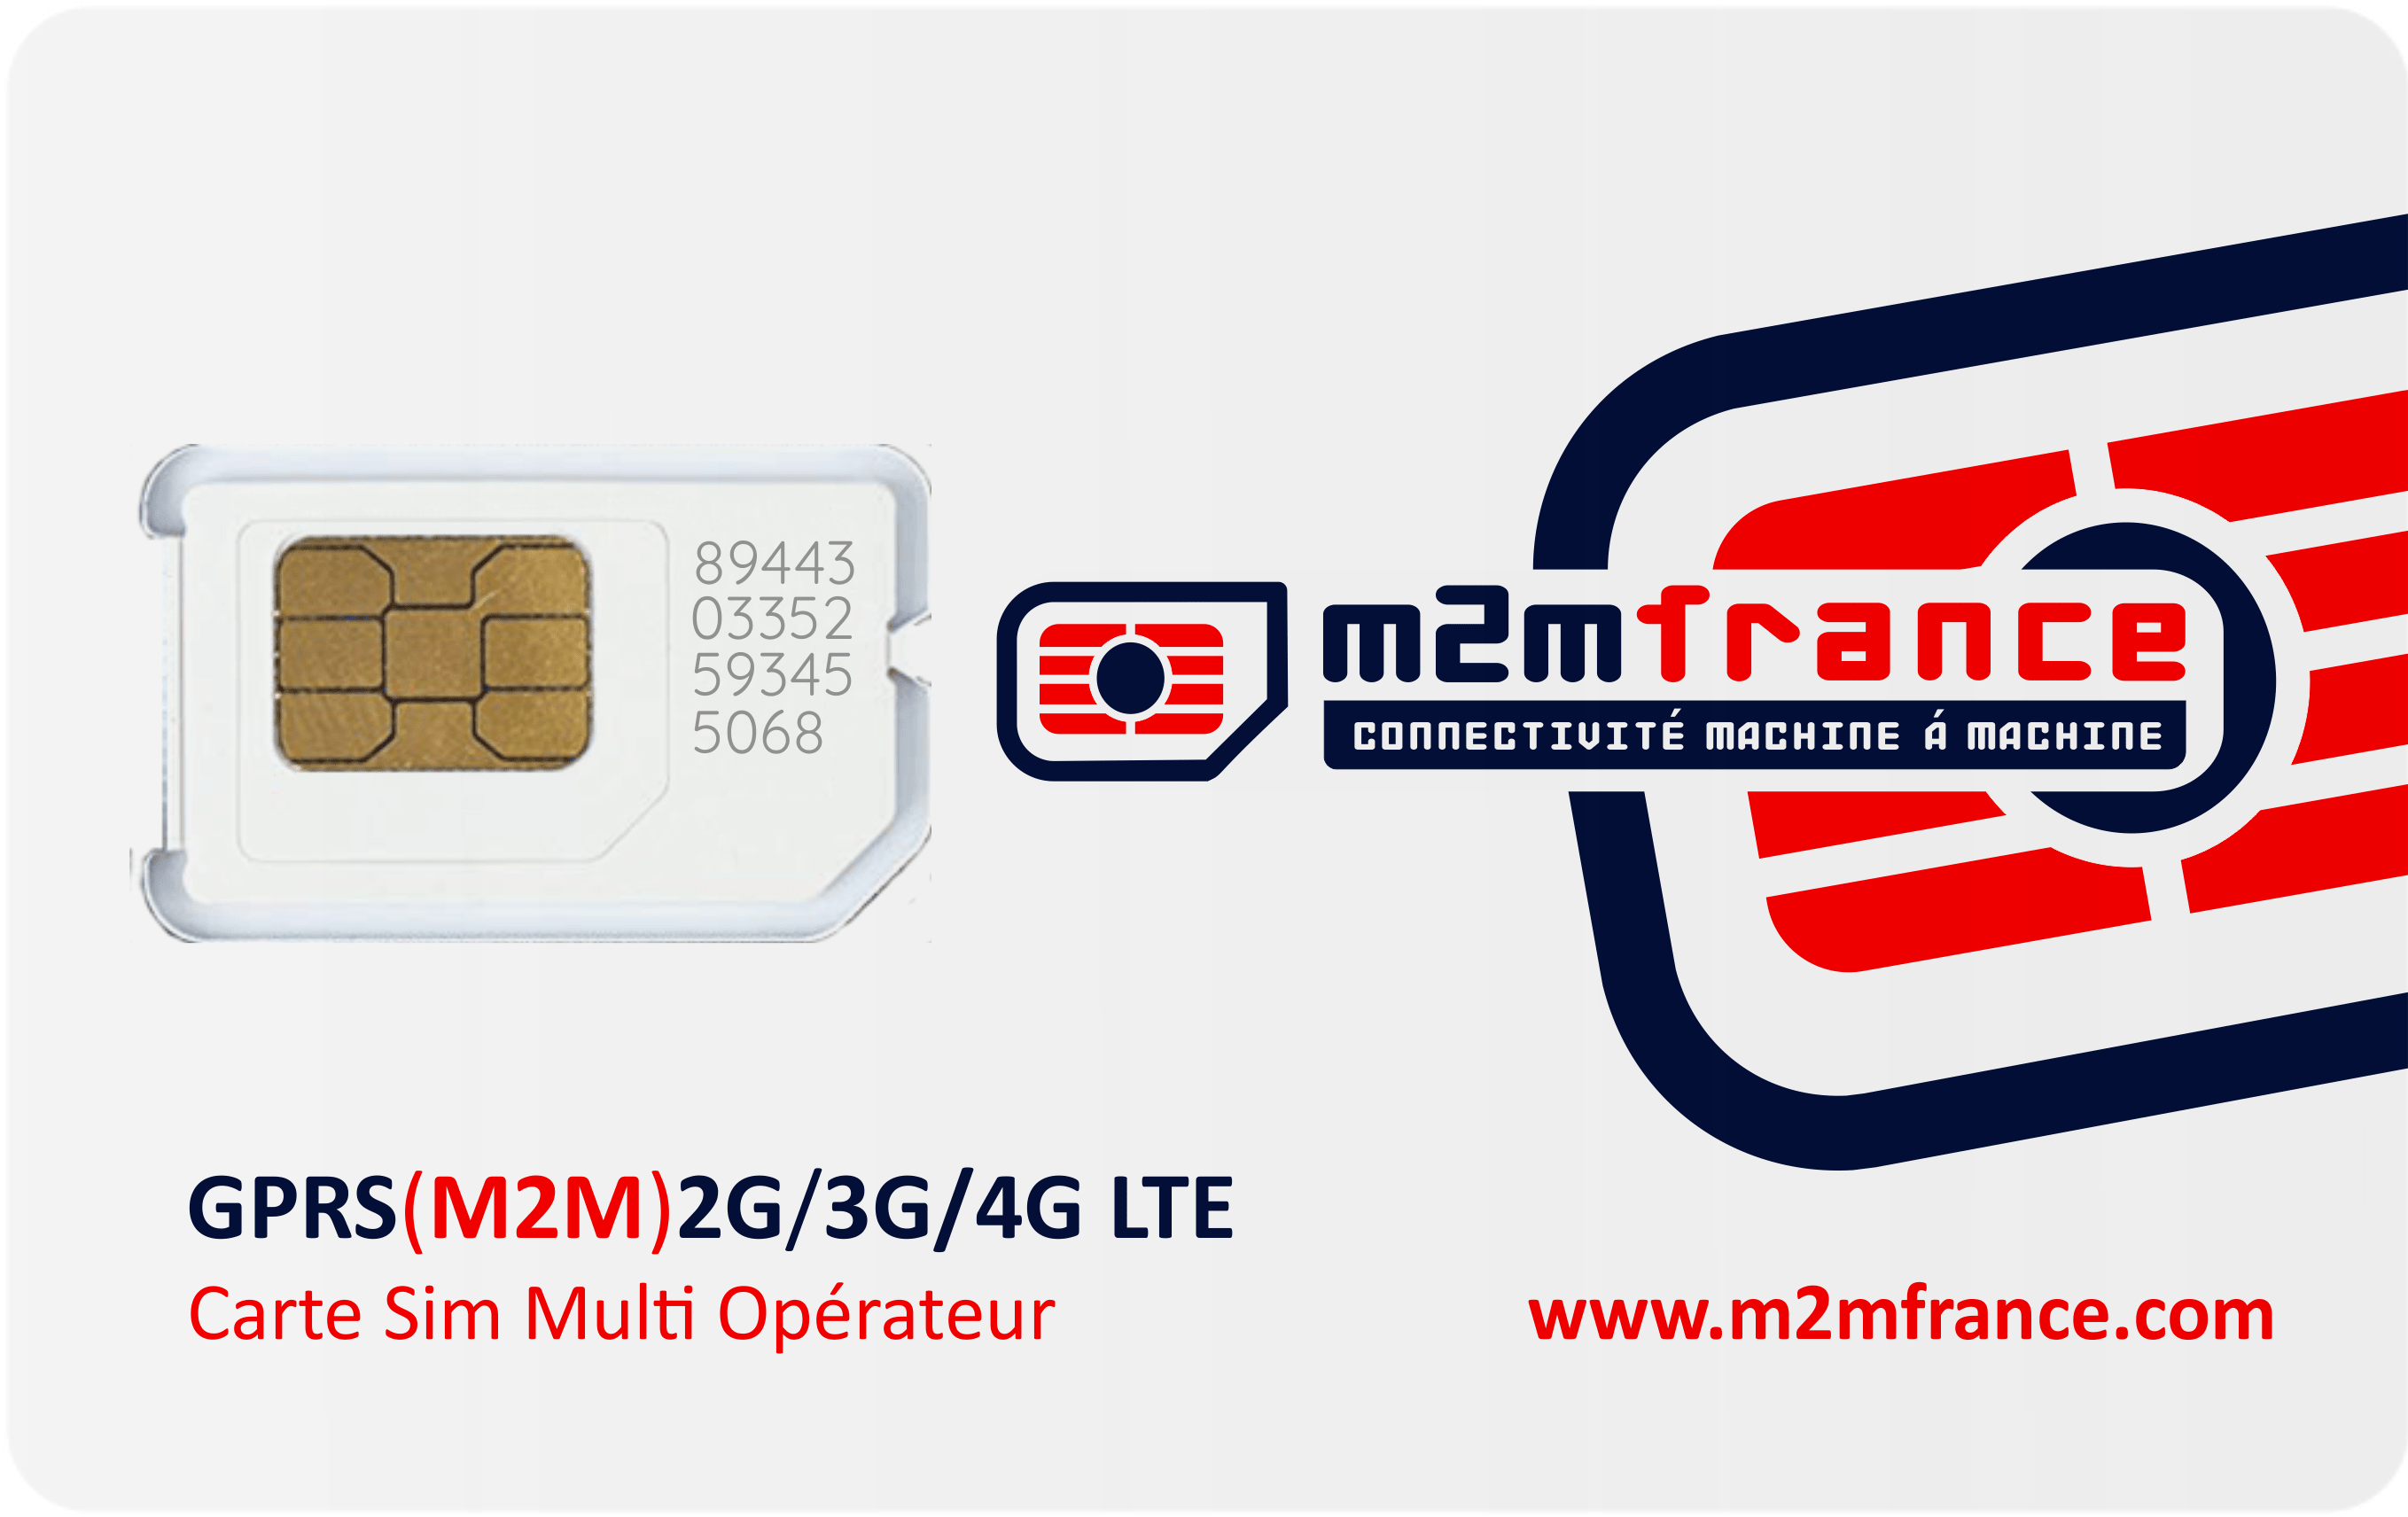 Carte SIM M2M multi-opérateur avec le plus puissant signal